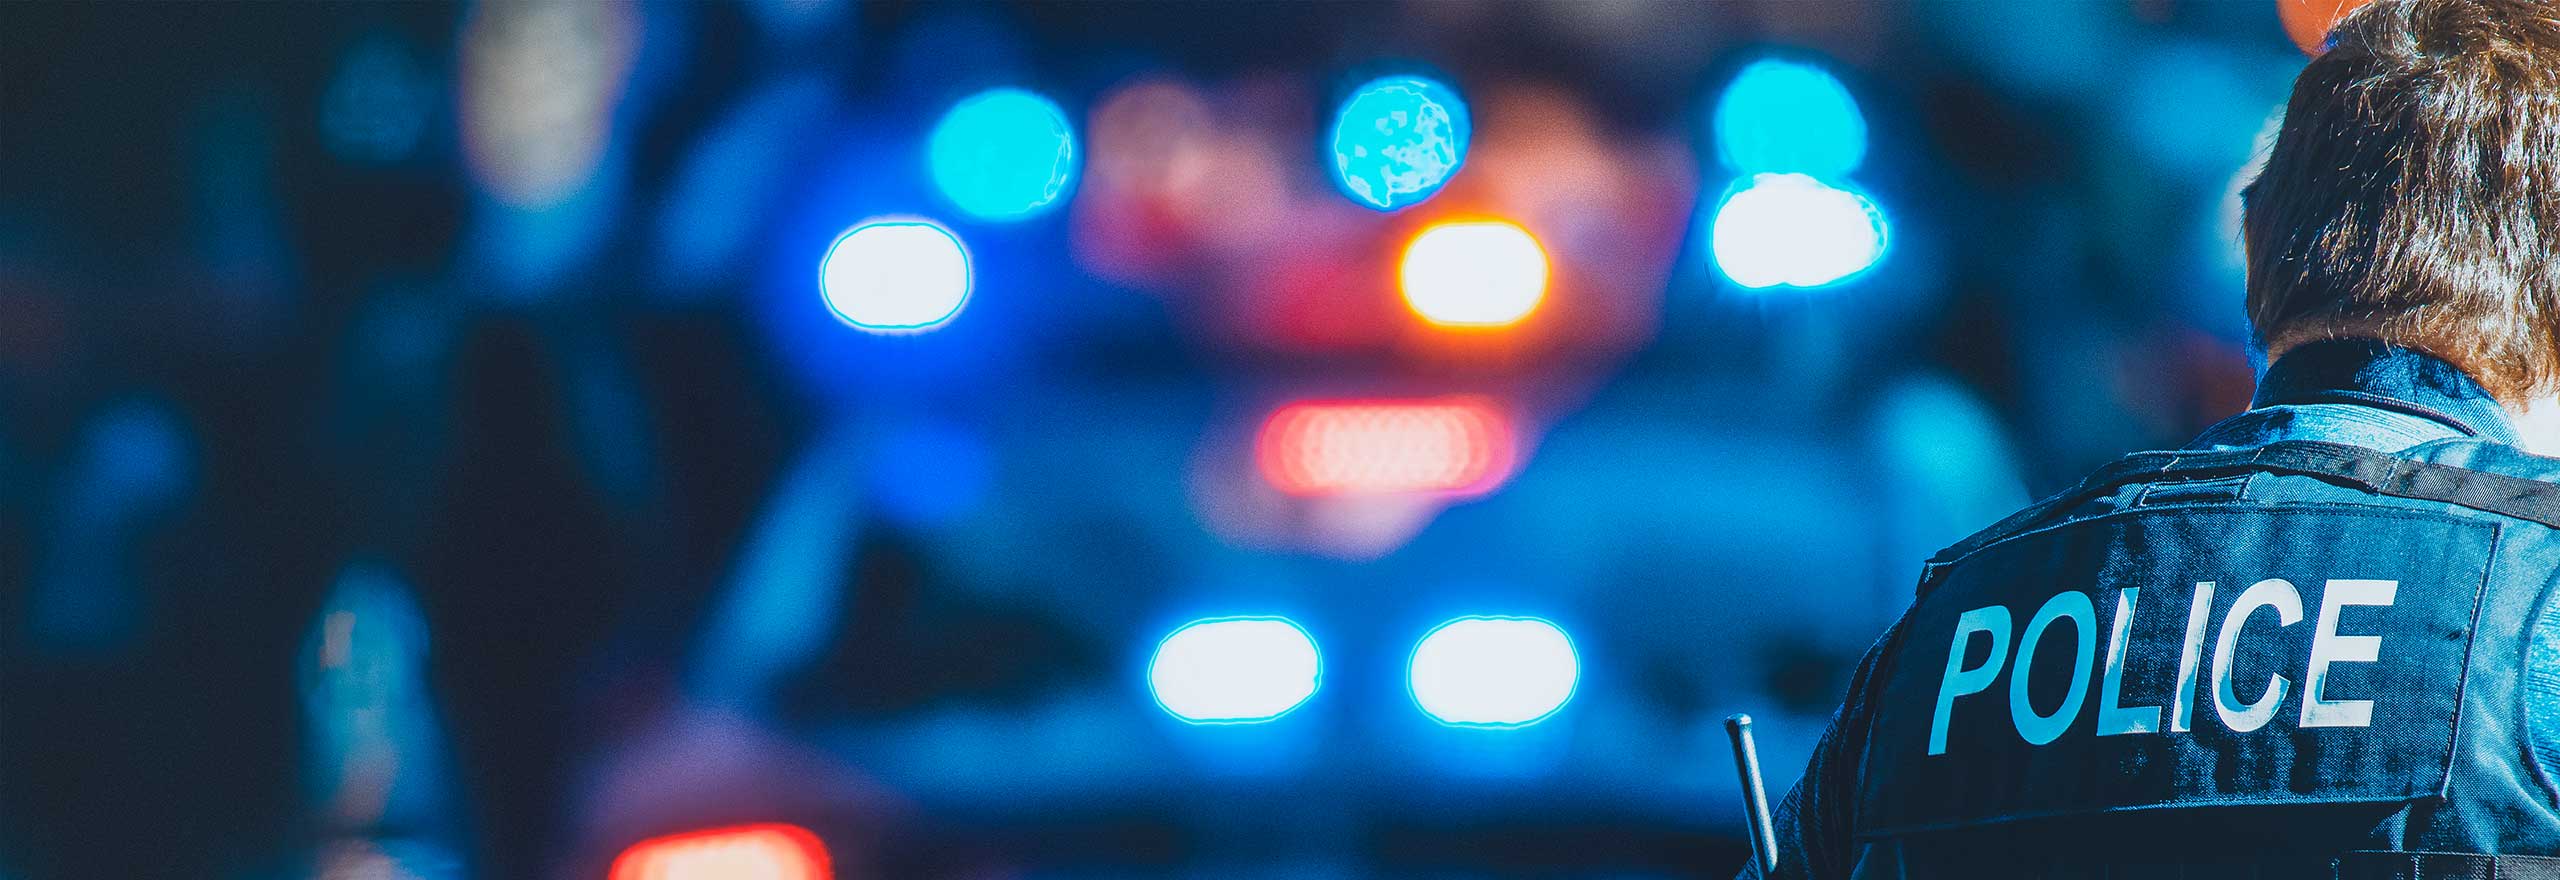 Las luces azules de un coche de policía brillan por la noche